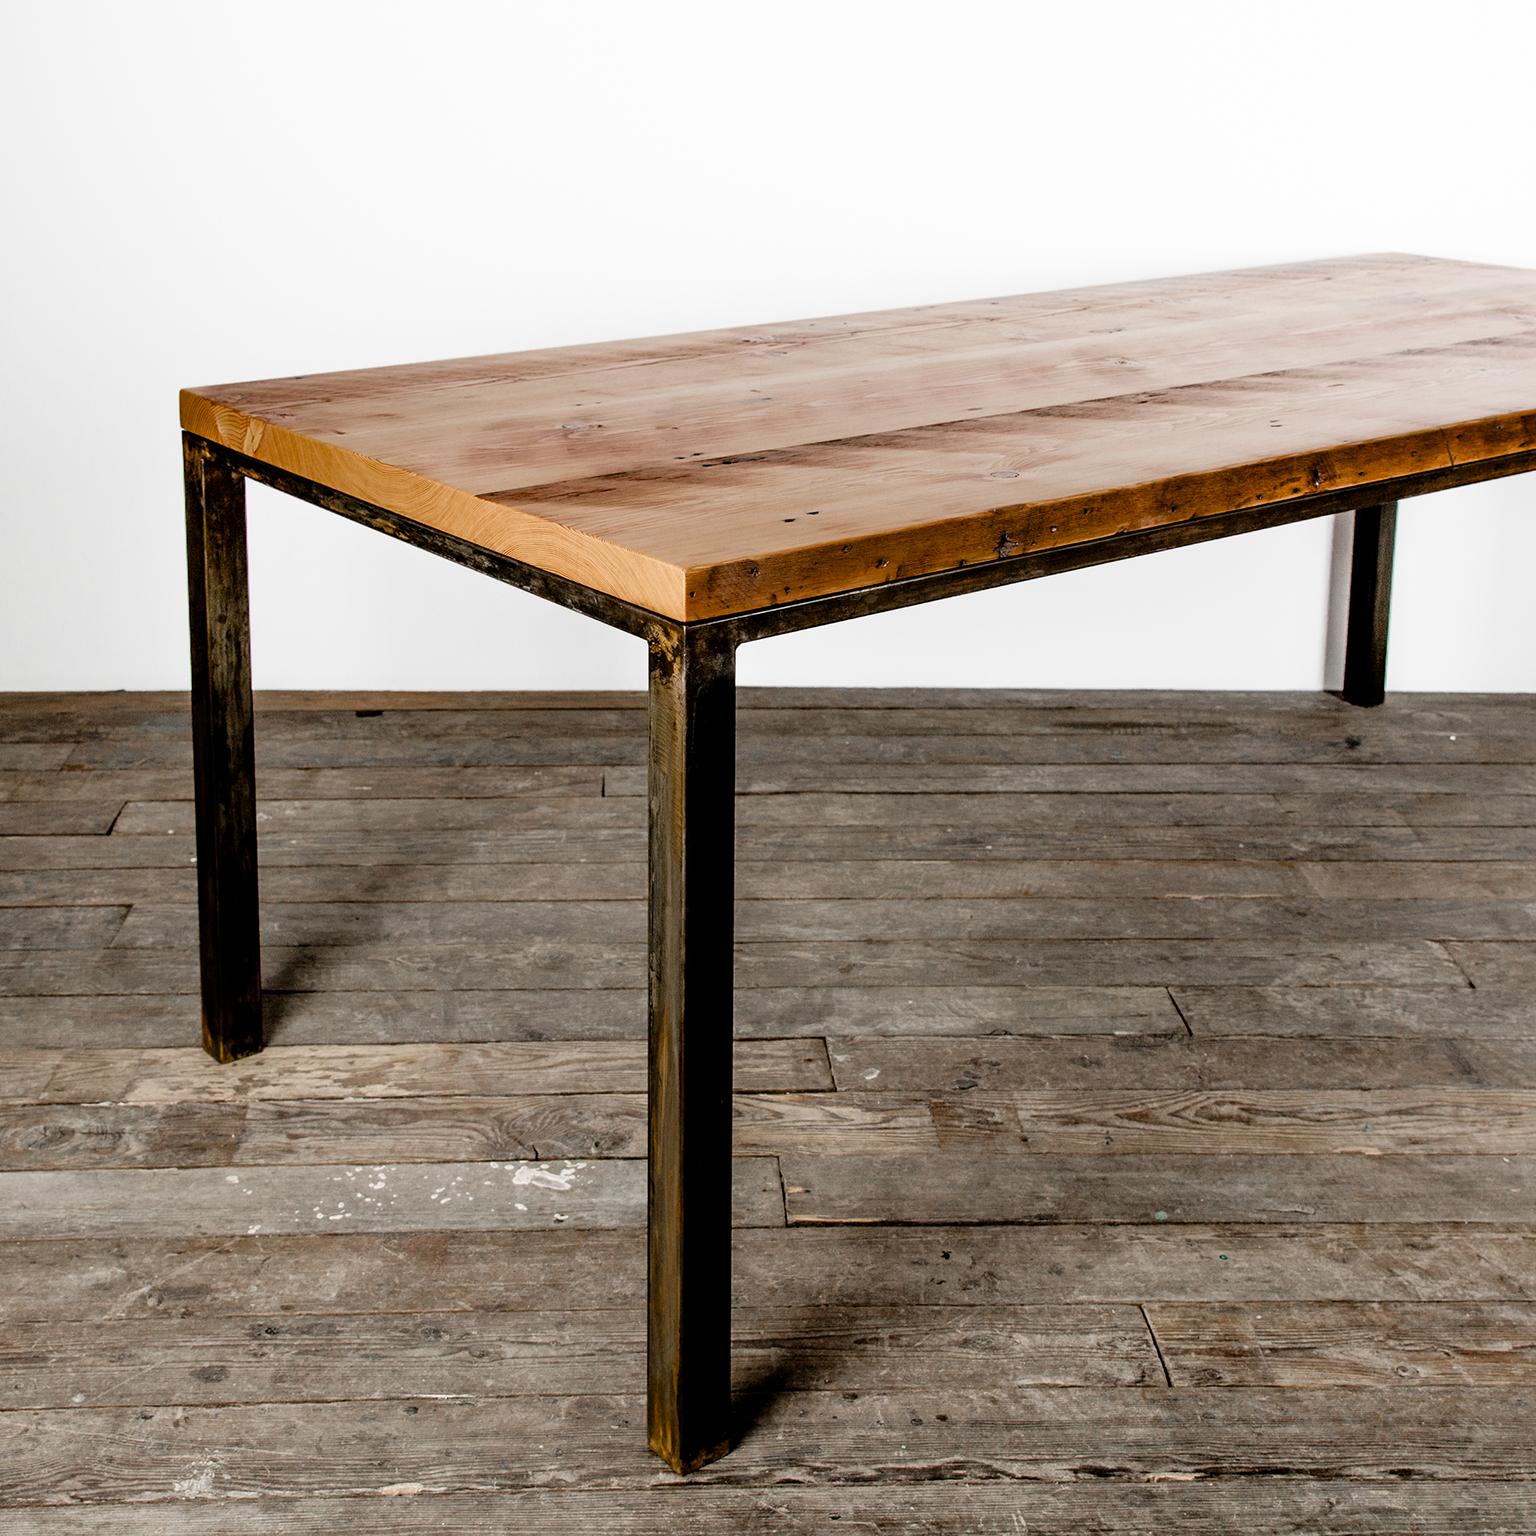 Unser Workshop-Tisch ist dem schlichten, zweckmäßigen Design einer originalen Werkbank nachempfunden. Halbgeschliffene Schweißnähte und absichtliche Maschinenspuren sind die Narben des Weges, den dieser Tisch bis zu seinem jetzigen Standort